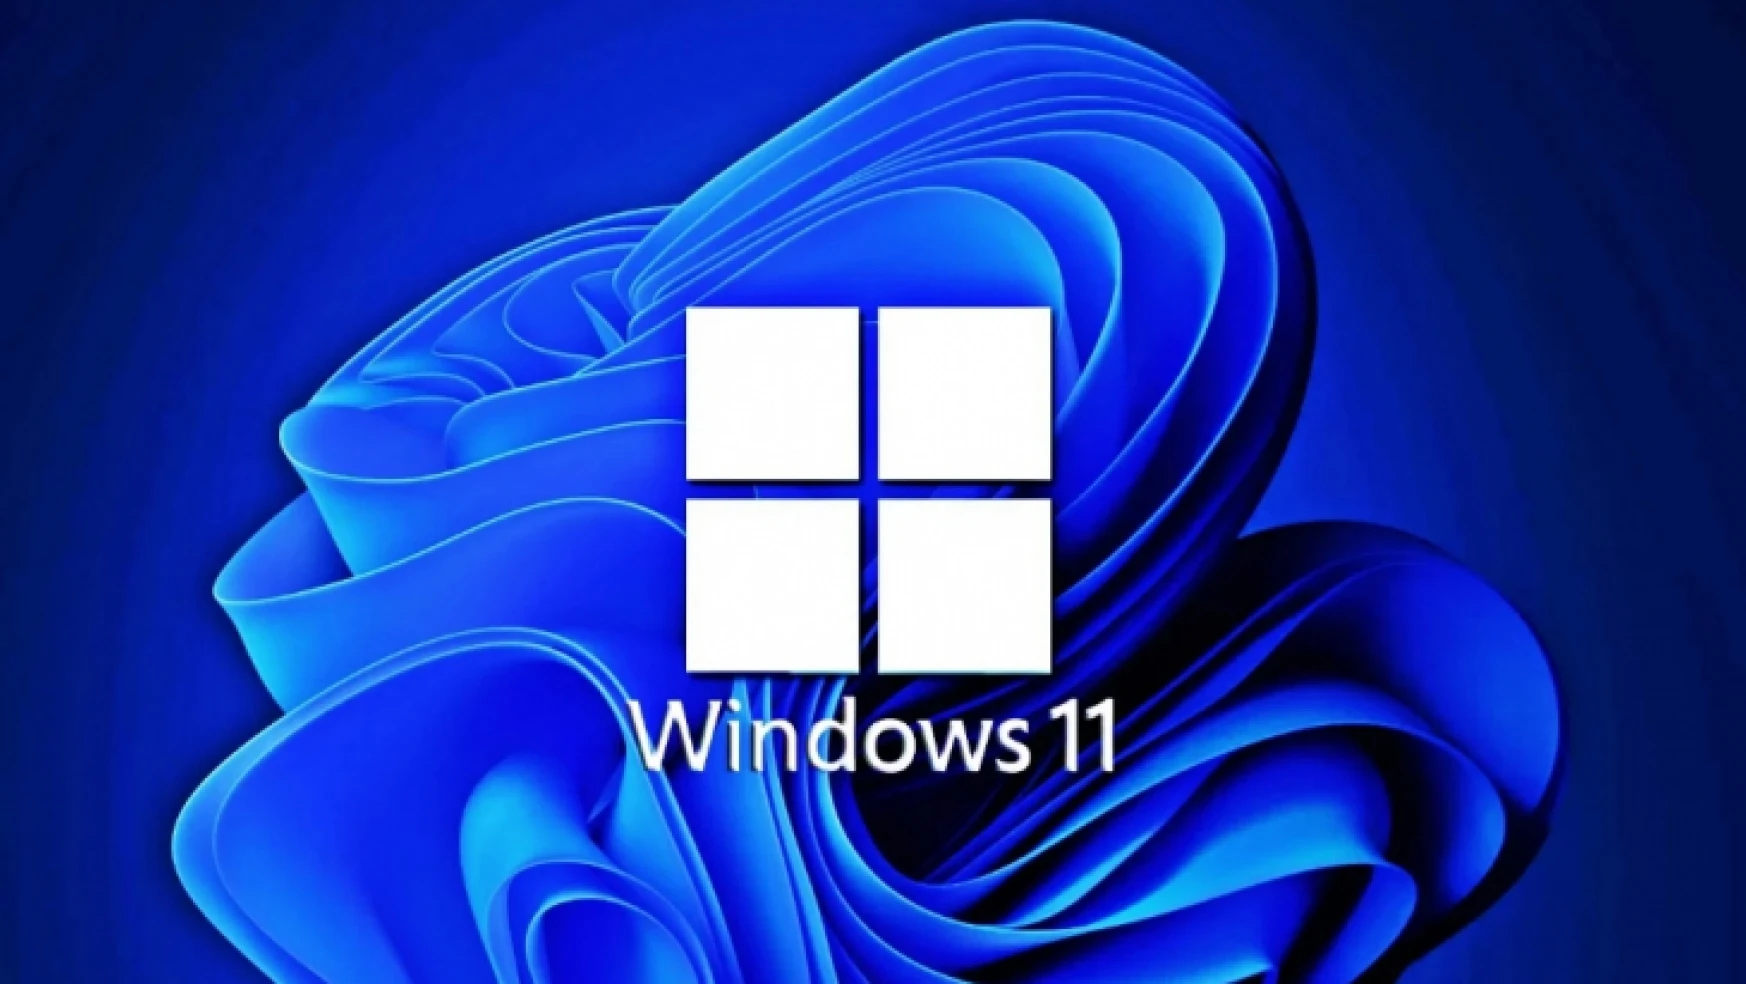 Windows 10 Key ile Güvenli Satın Alma